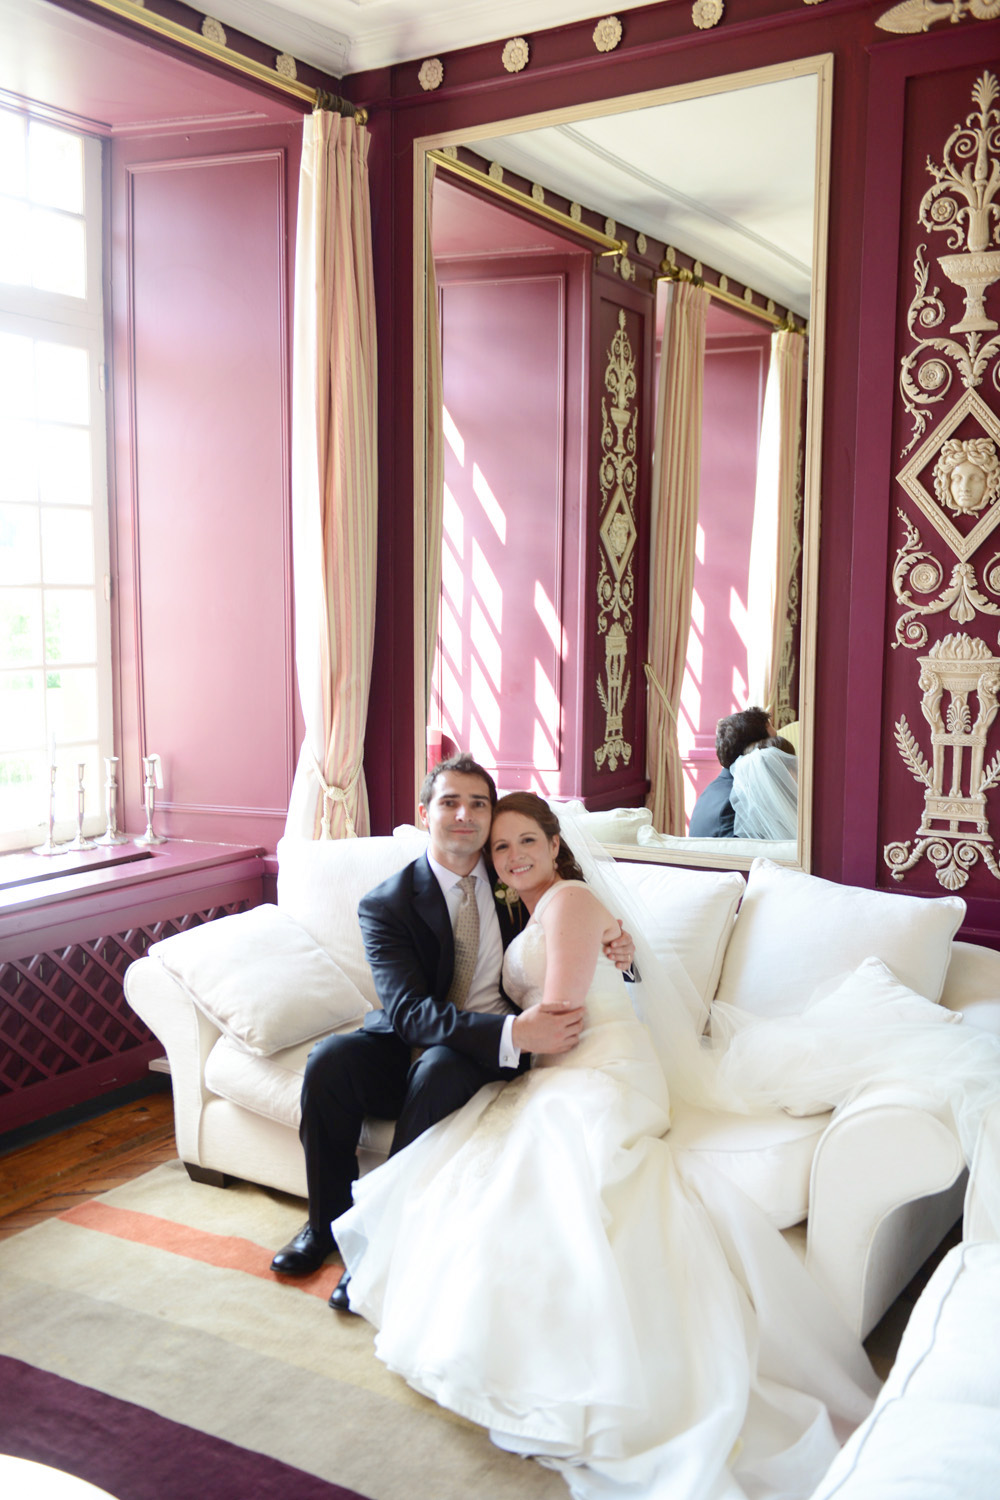 Hochzeit und Freie Trauung von Corrie & Alex in Frankreich von Hochzeitsfotograf Lippstadt NRW XOANDREA